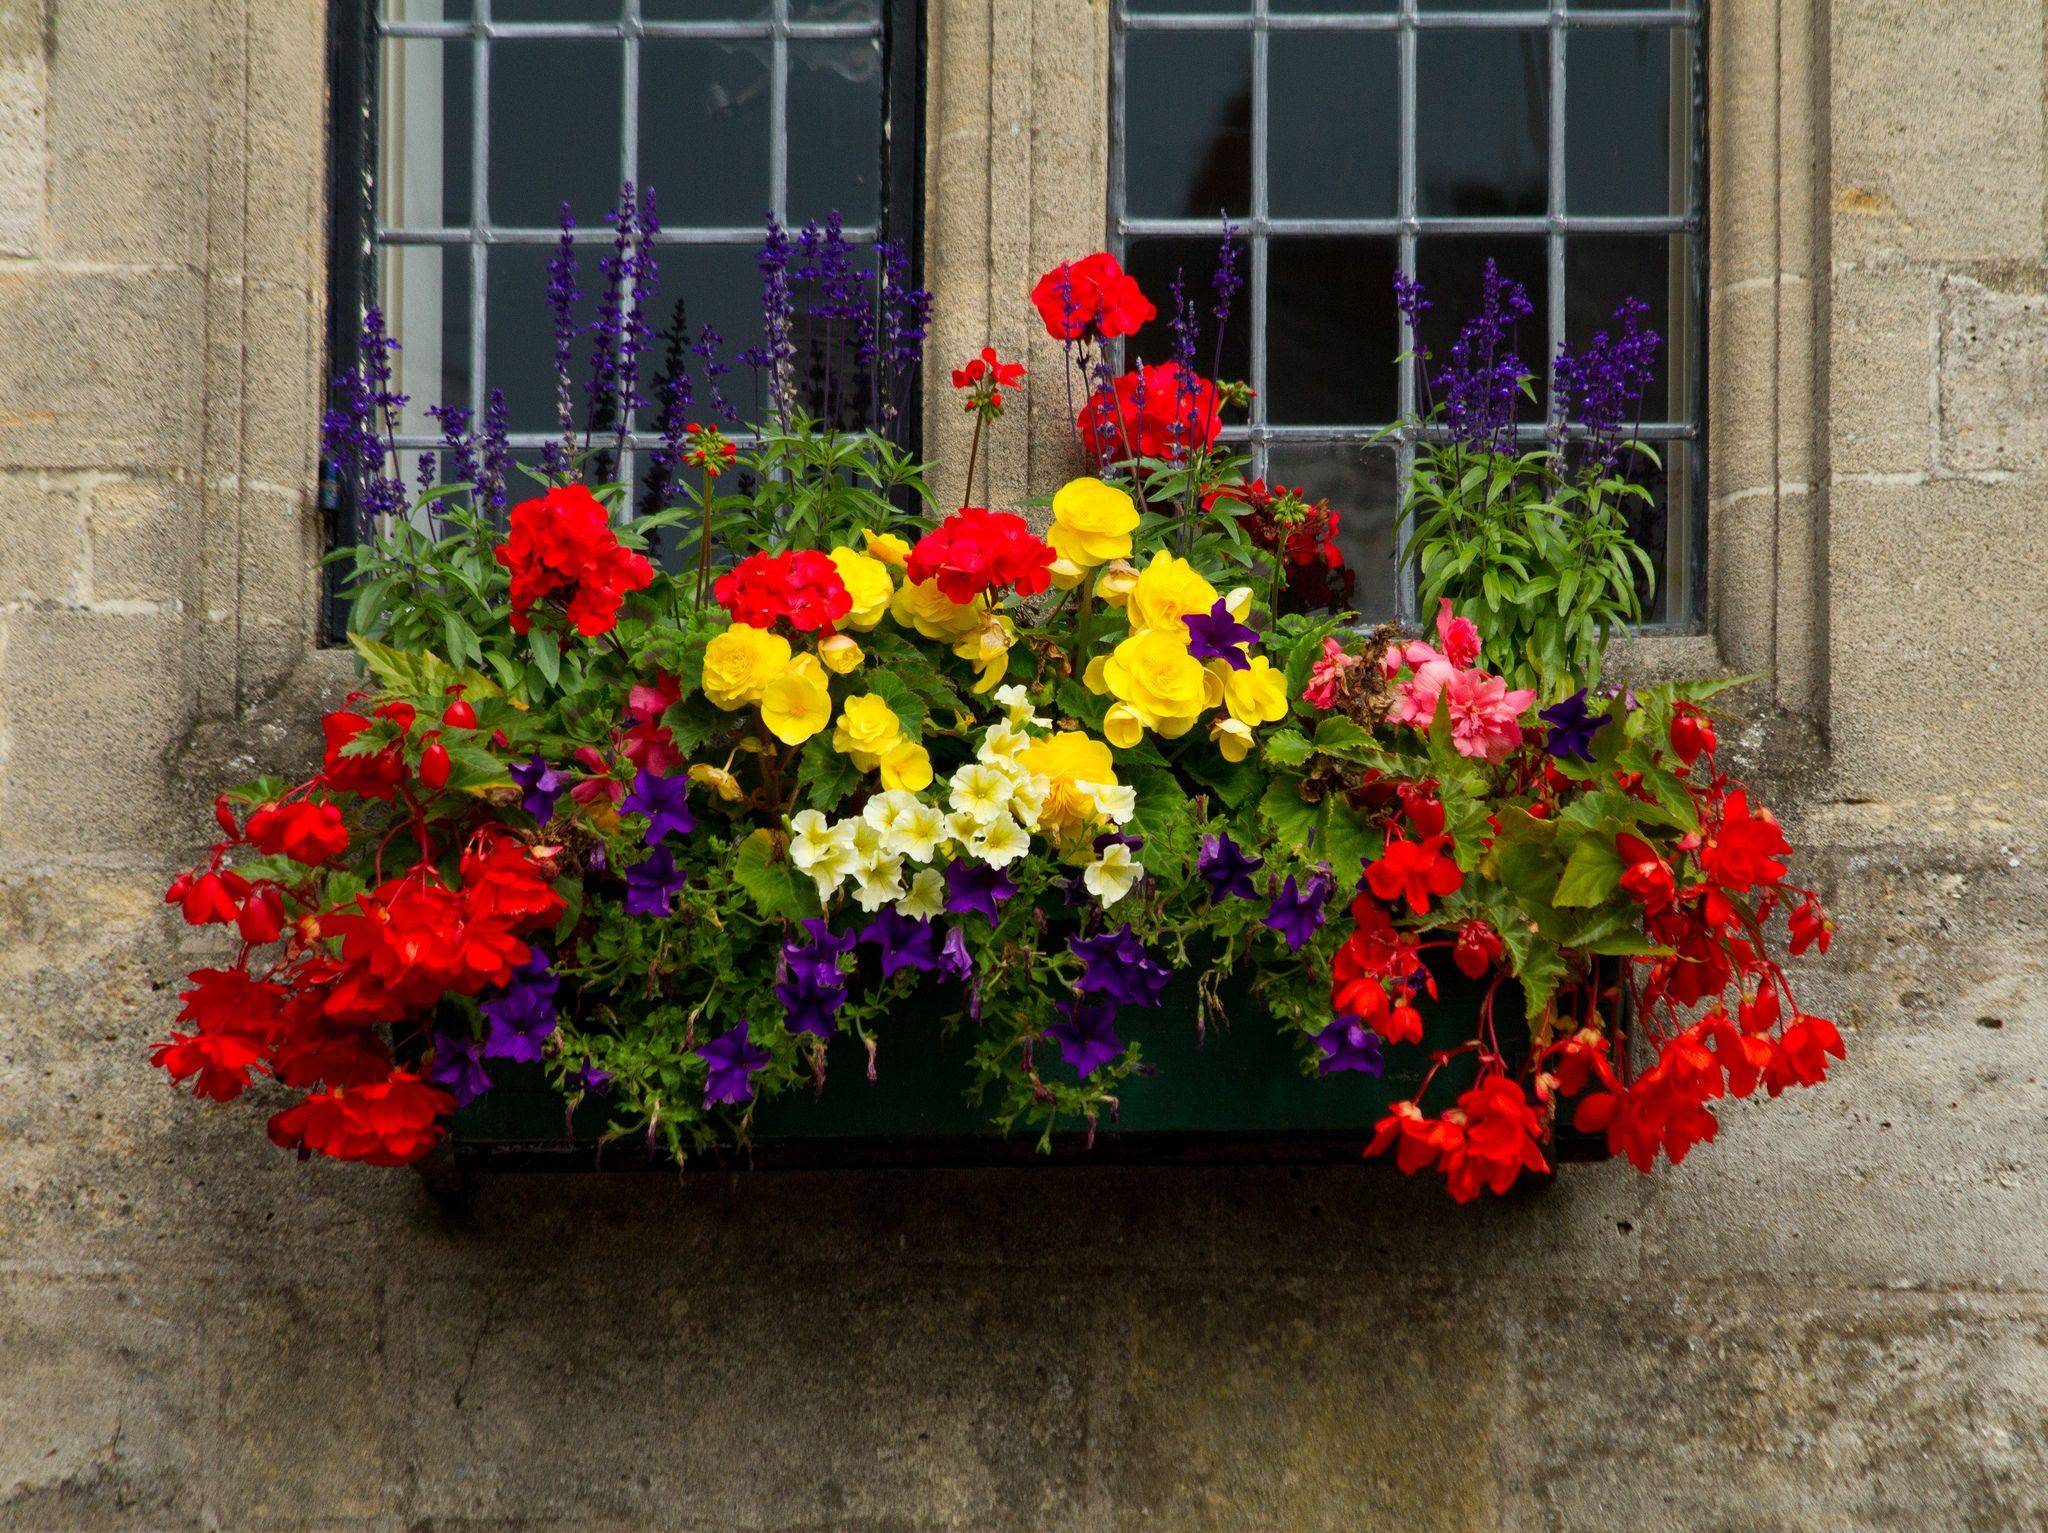 Цветы в балконных ящиках фото